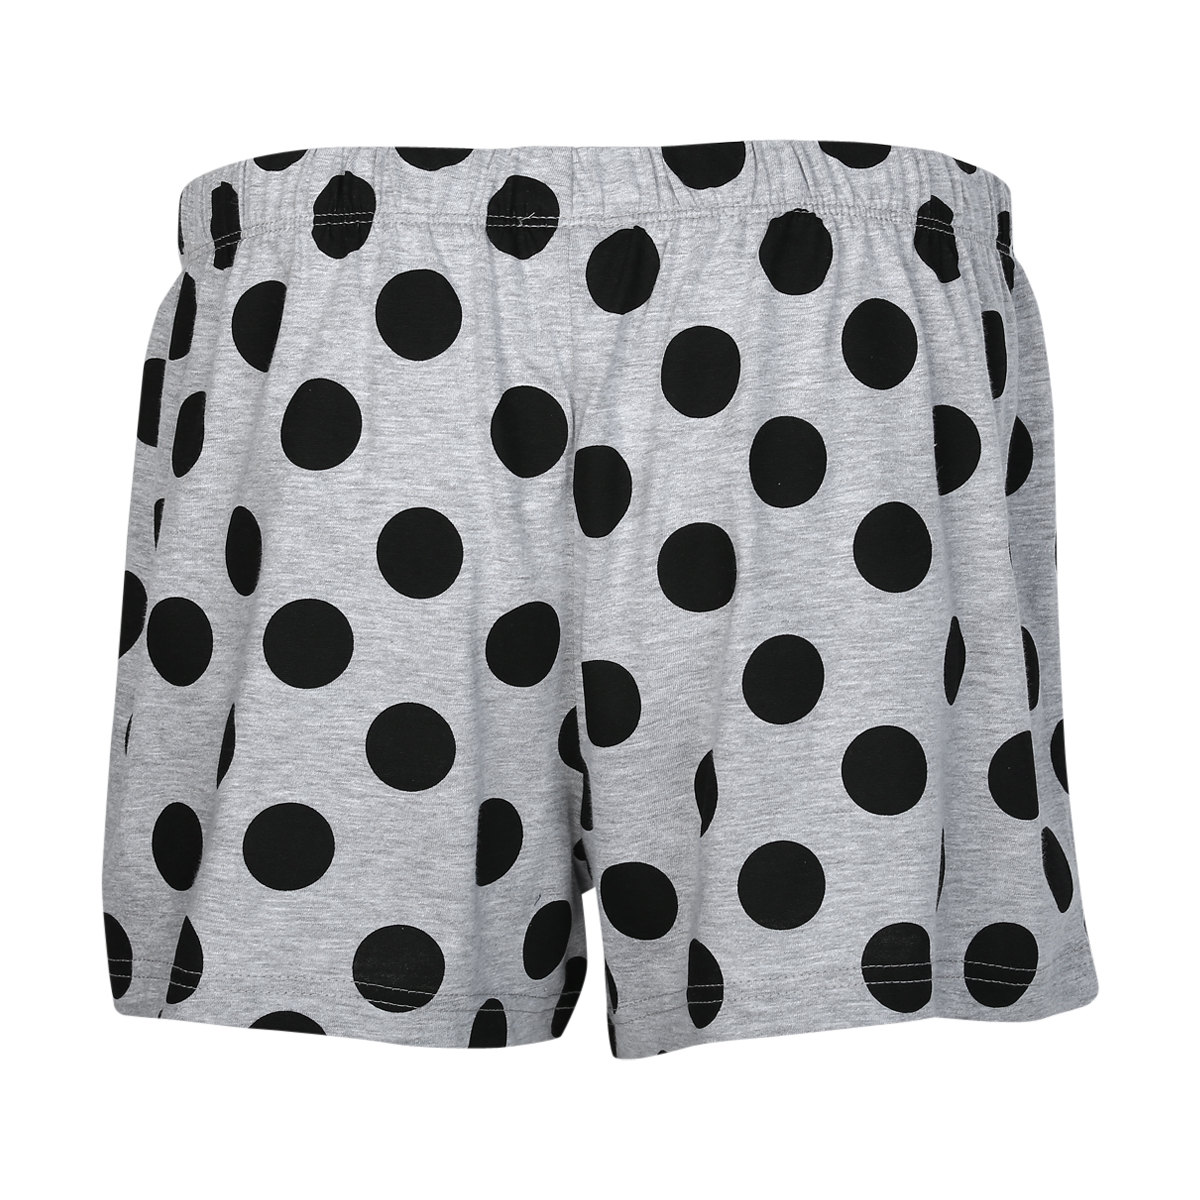 Printed Knit Shorts | Kmart